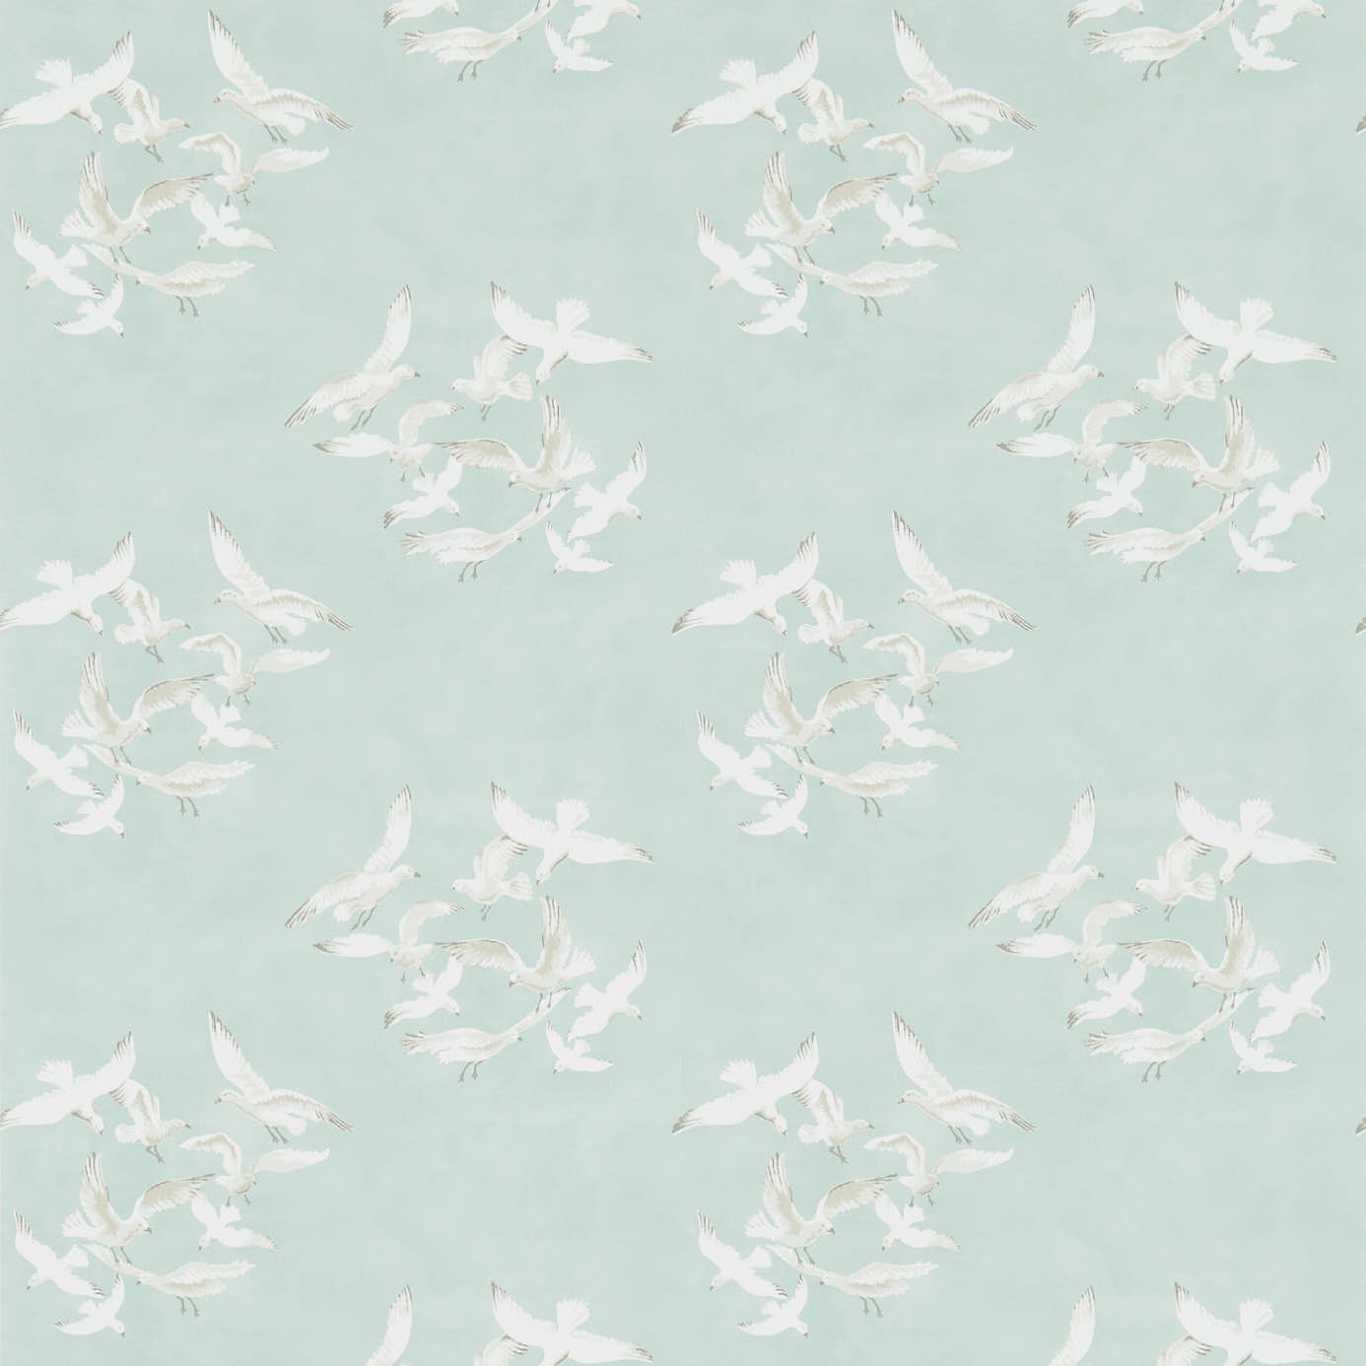 Seagulls Wallpaper - Teal